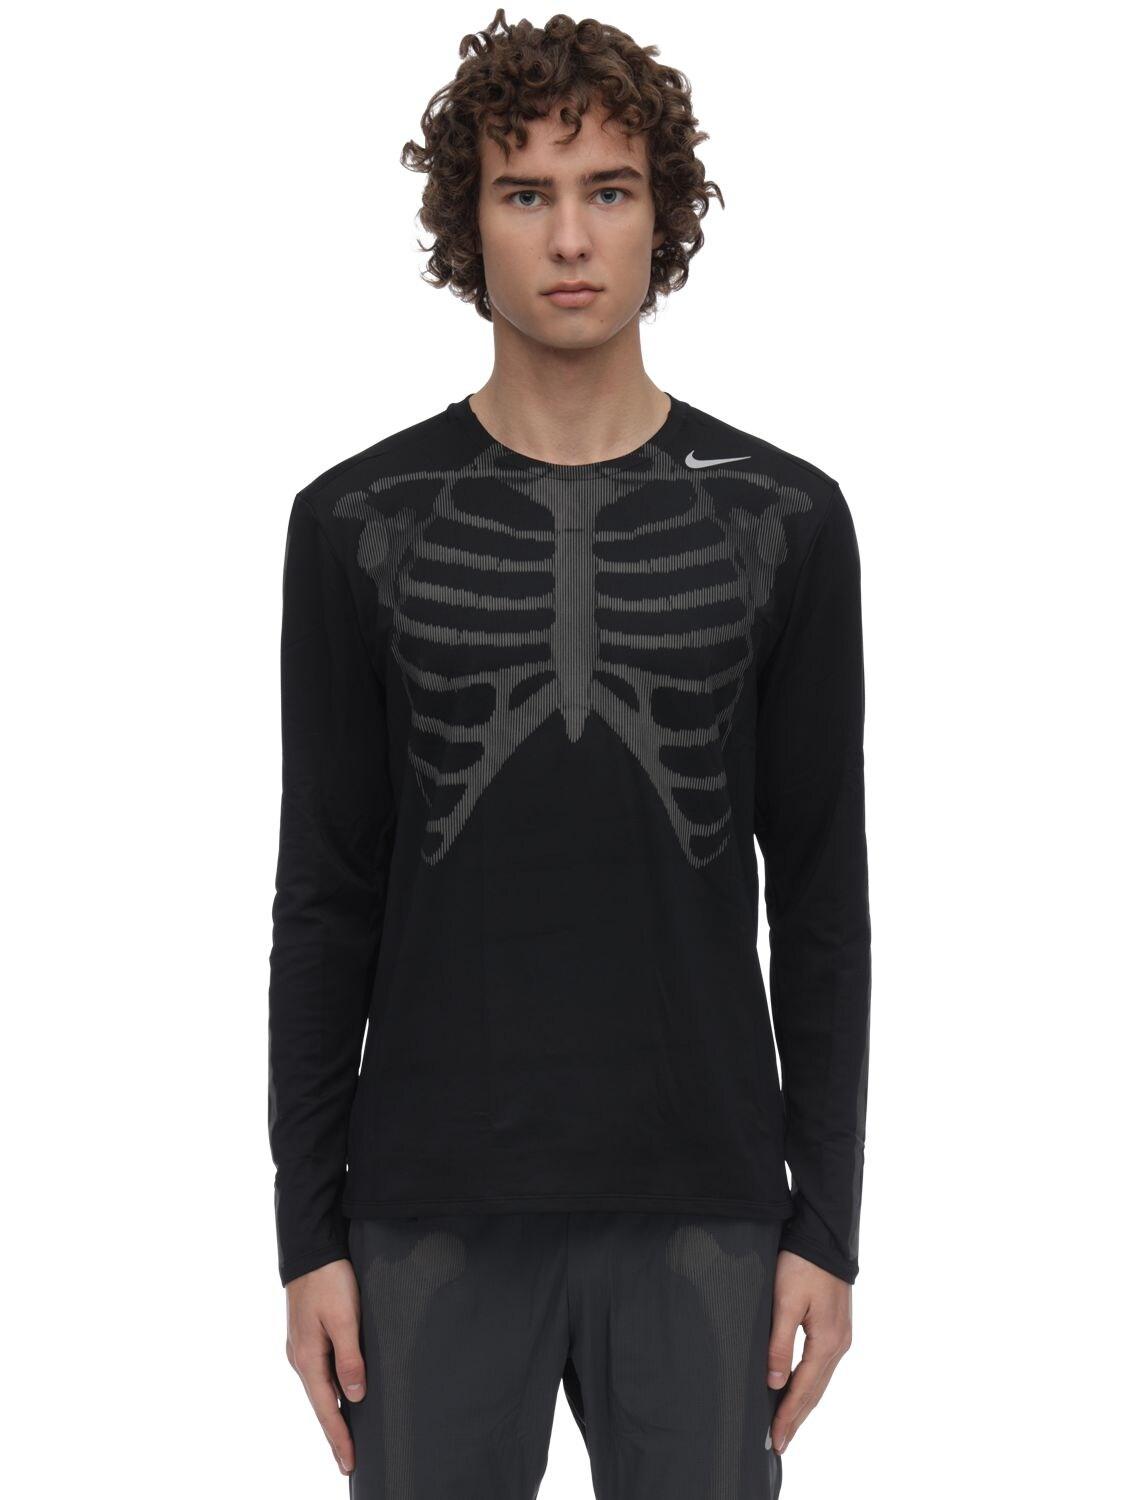 Nike Nrg Skeleton Long Sleeve Top in Black for Men | Lyst